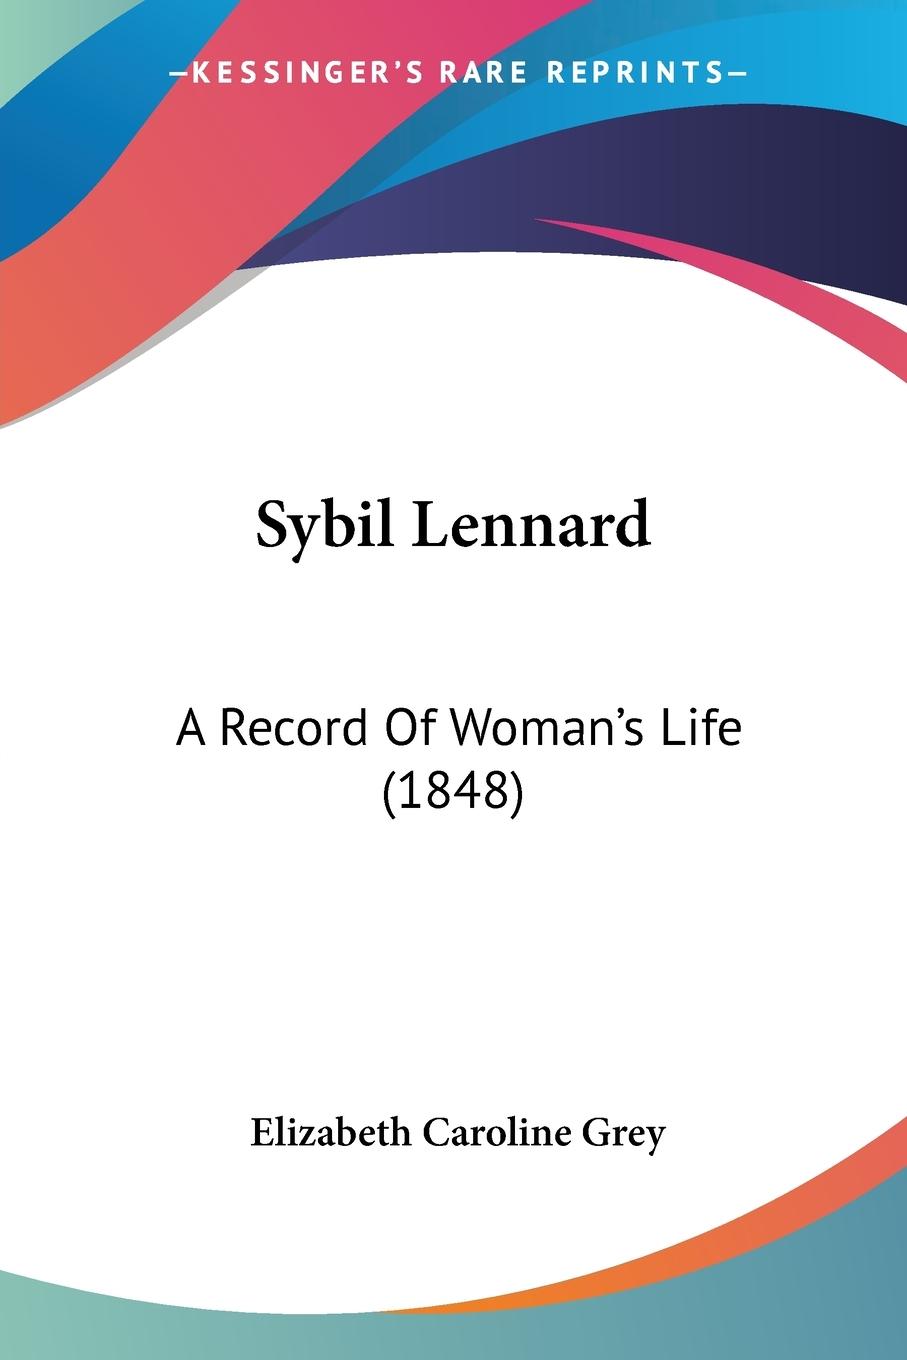 Sybil Lennard - Grey, Elizabeth Caroline